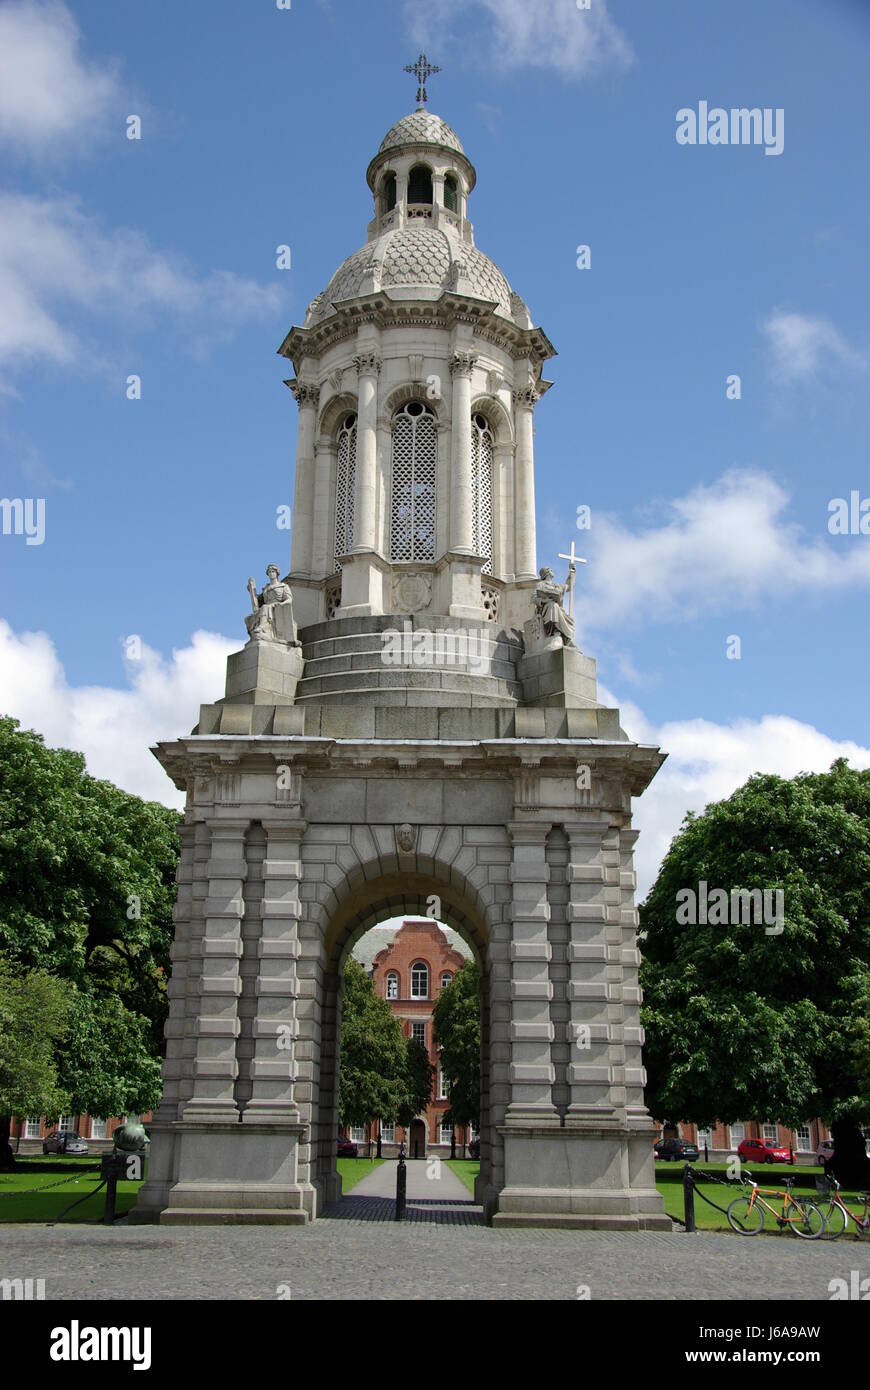 Monumento college monumento torre arch square stile di architettura costruttiva Foto Stock